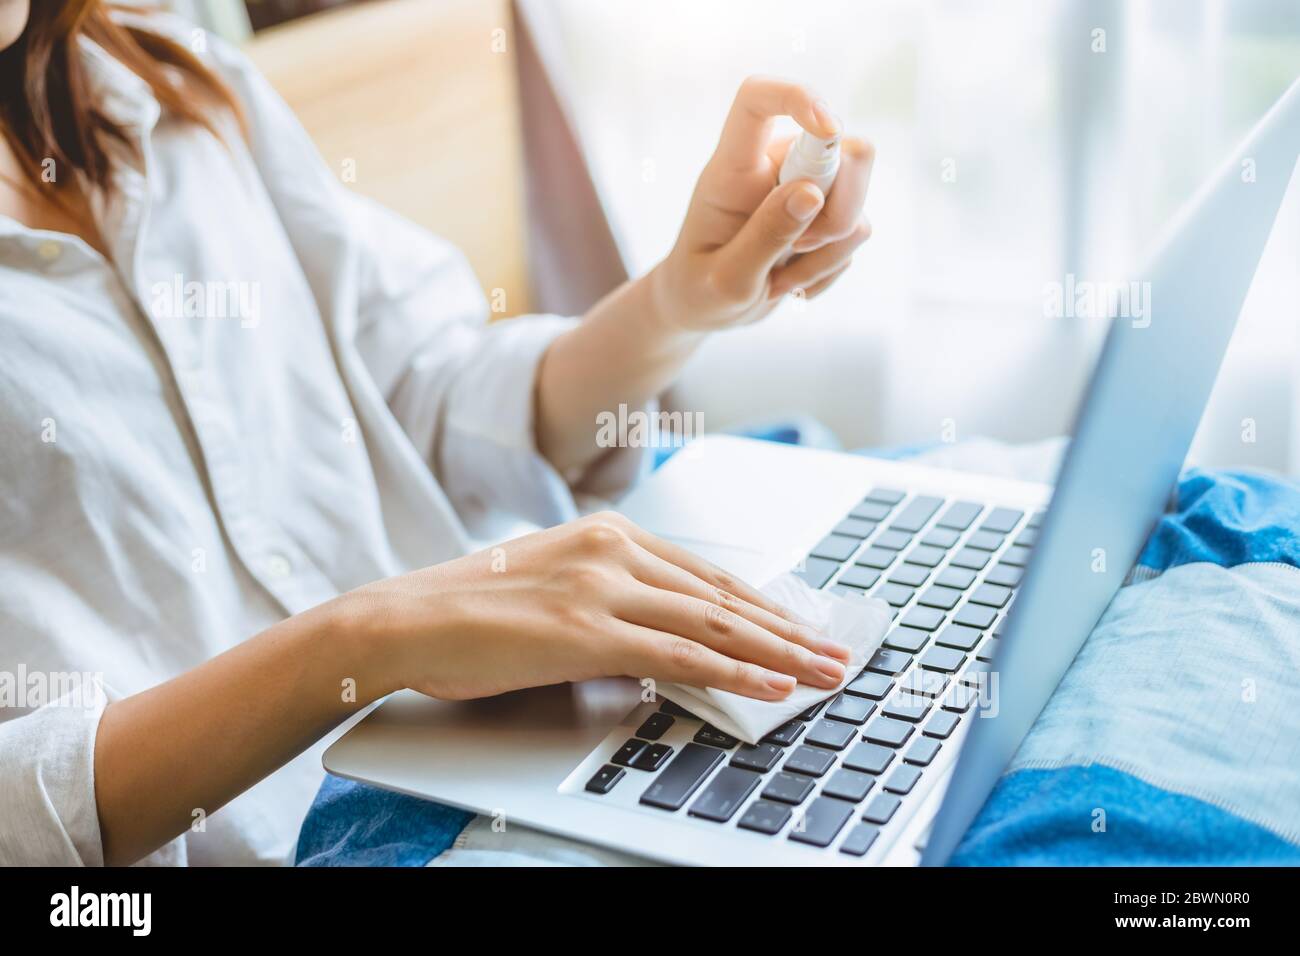 Personas alcohol spray portátil limpieza teclado para la higiene personal y la limpieza protección contra virus. Foto de stock